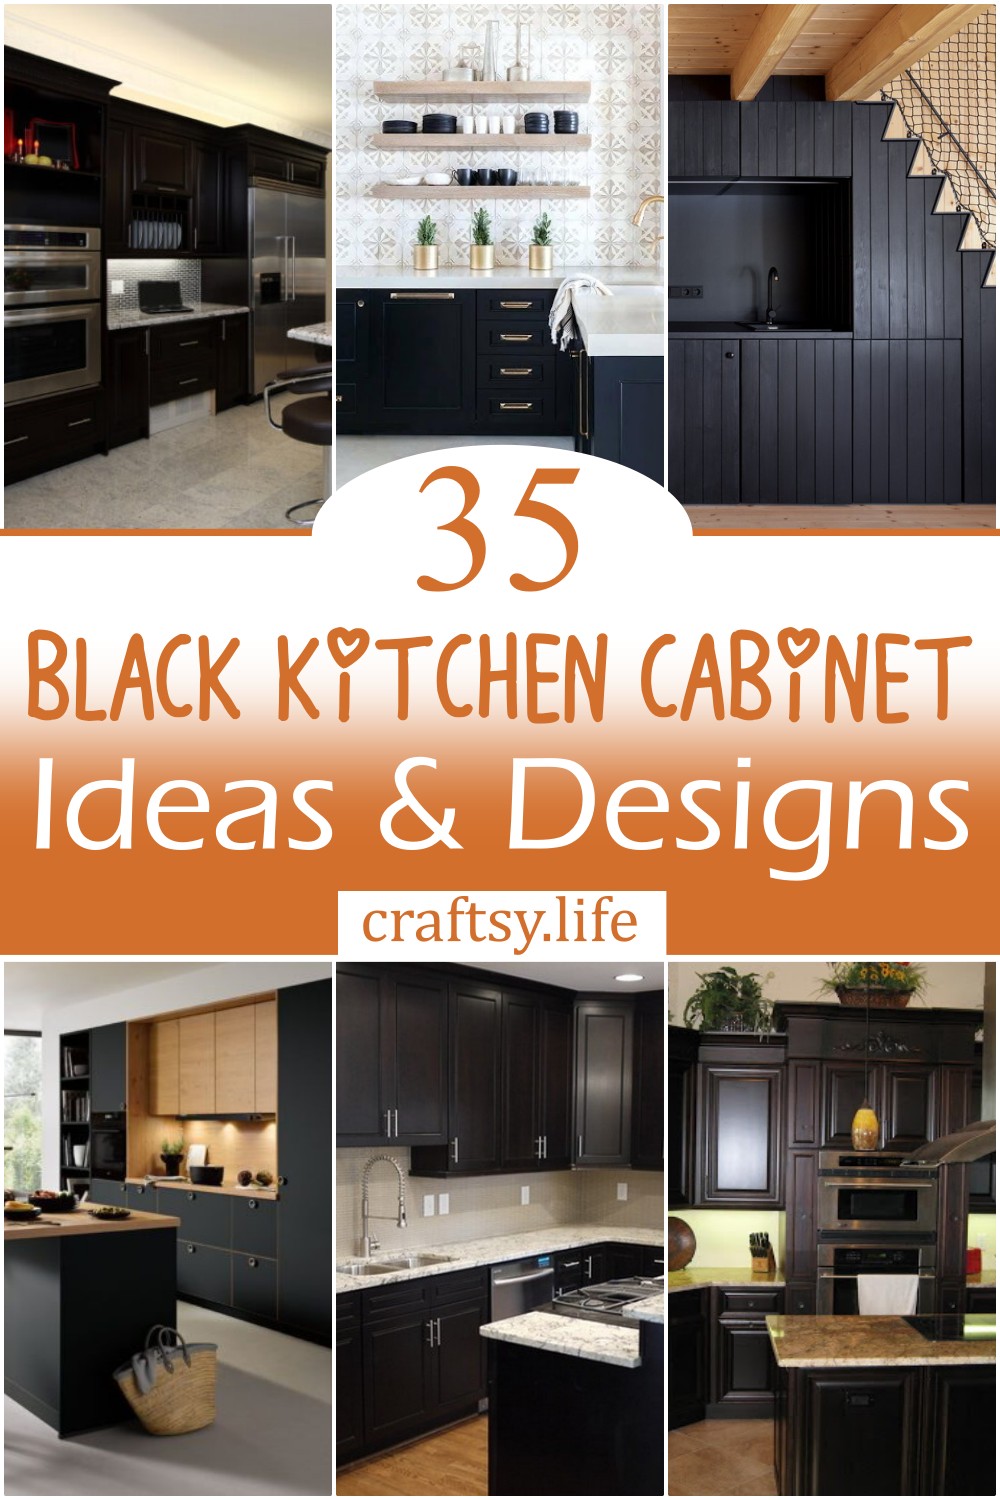 Black Kitchen Cabinet Ideas & Designs 1